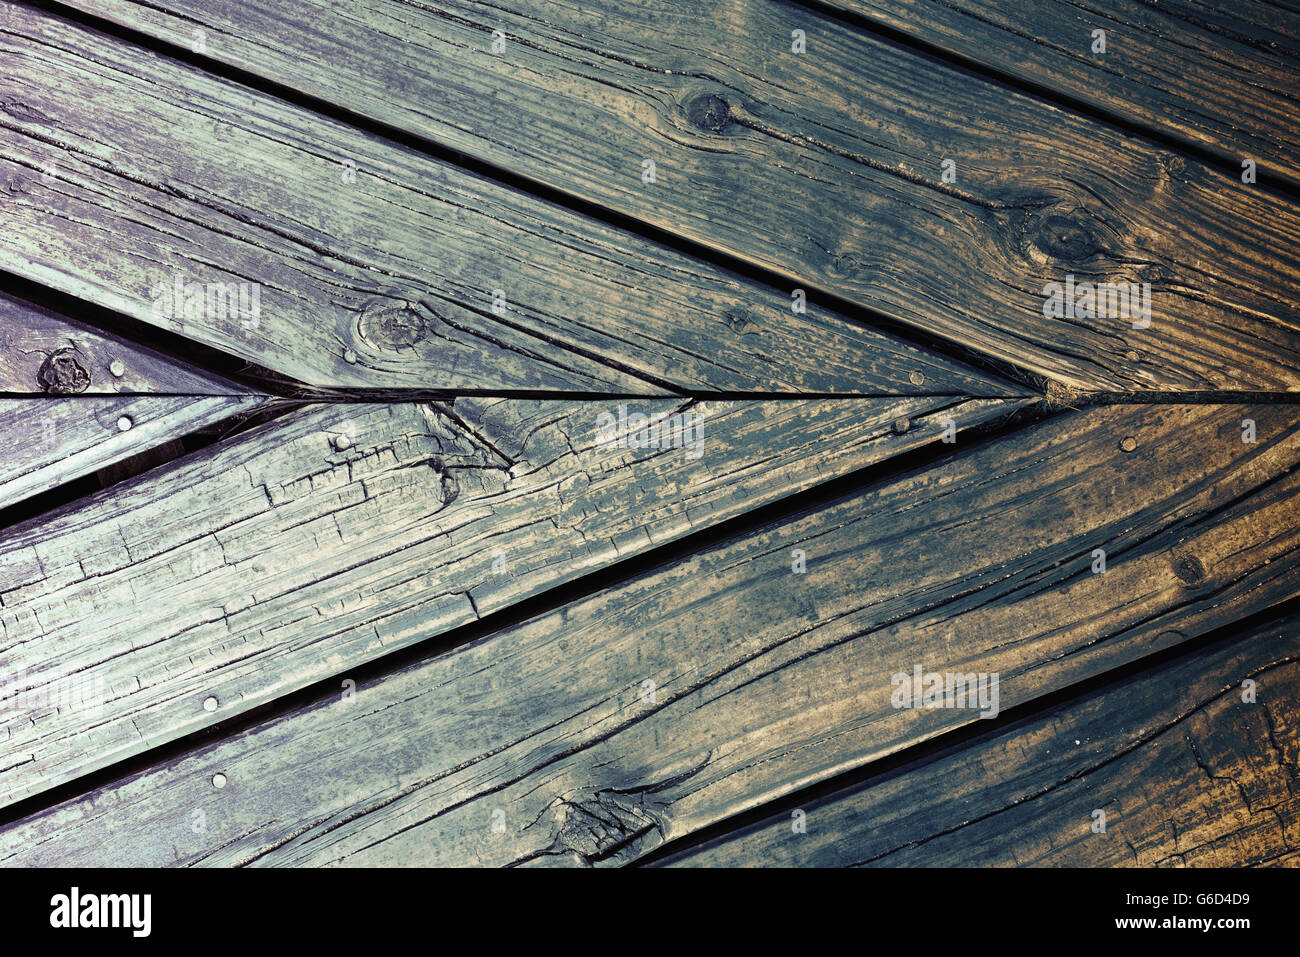 Draufsicht der natürlichen Holzplatte Stock, Hipster Vintage-Stil rustikaler Hintergrund Oberflächenbeschaffenheit hautnah. Stockfoto